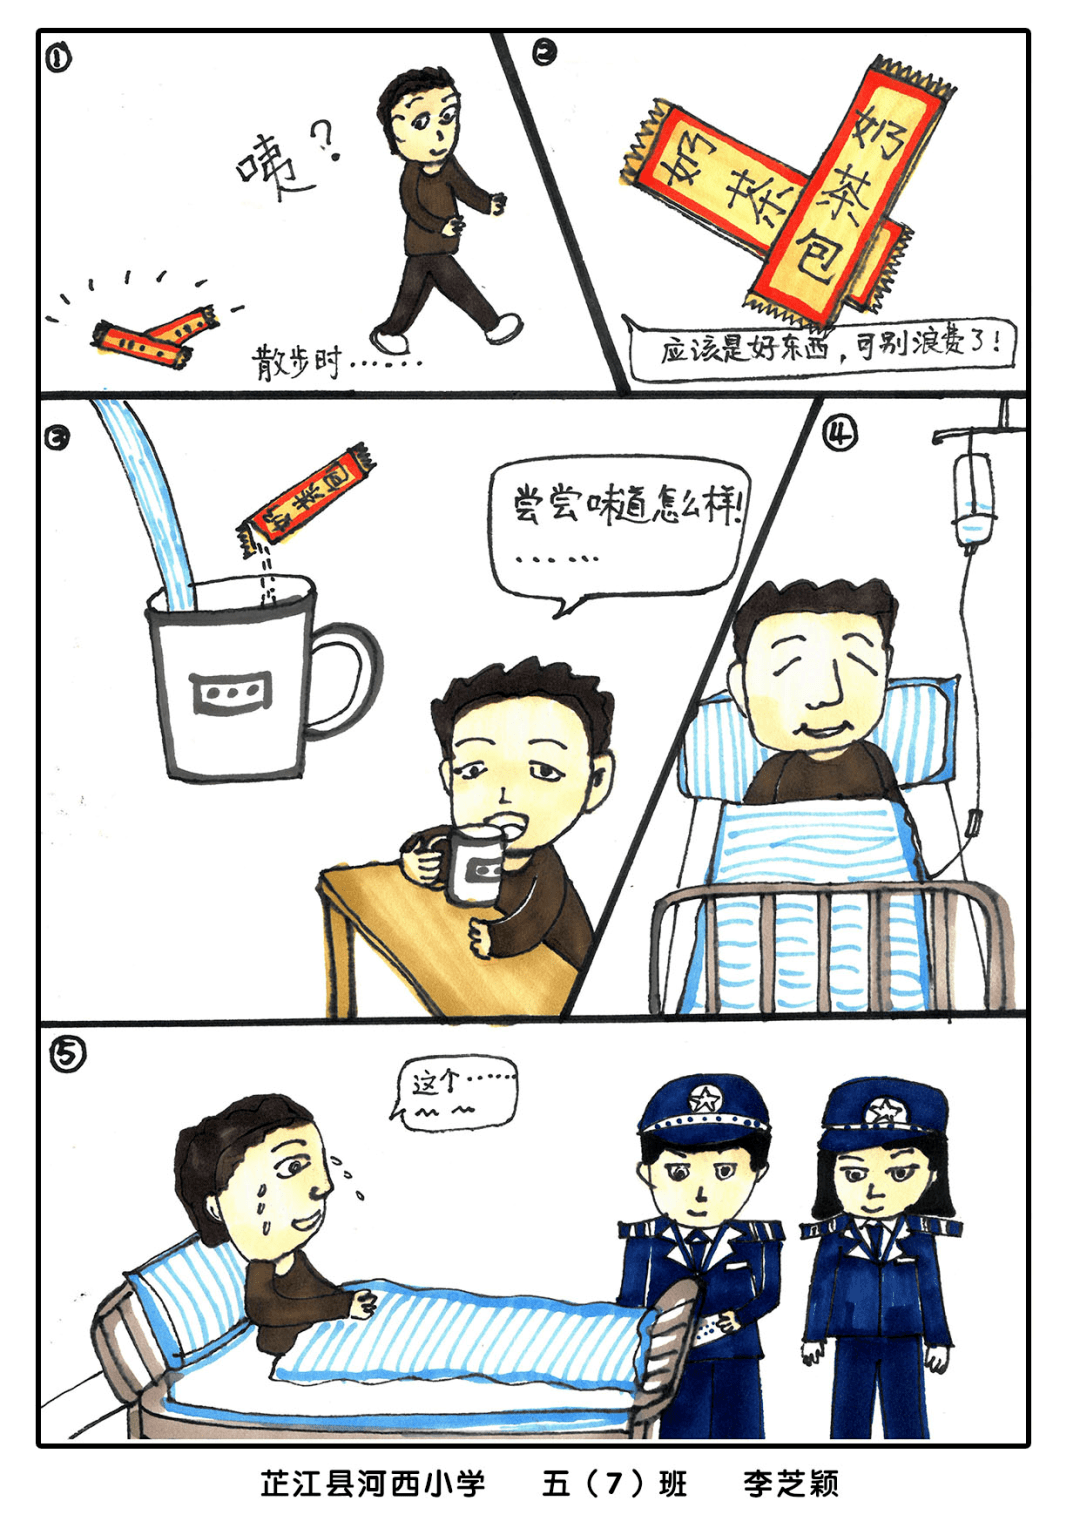 禁毒漫画四宫格图片